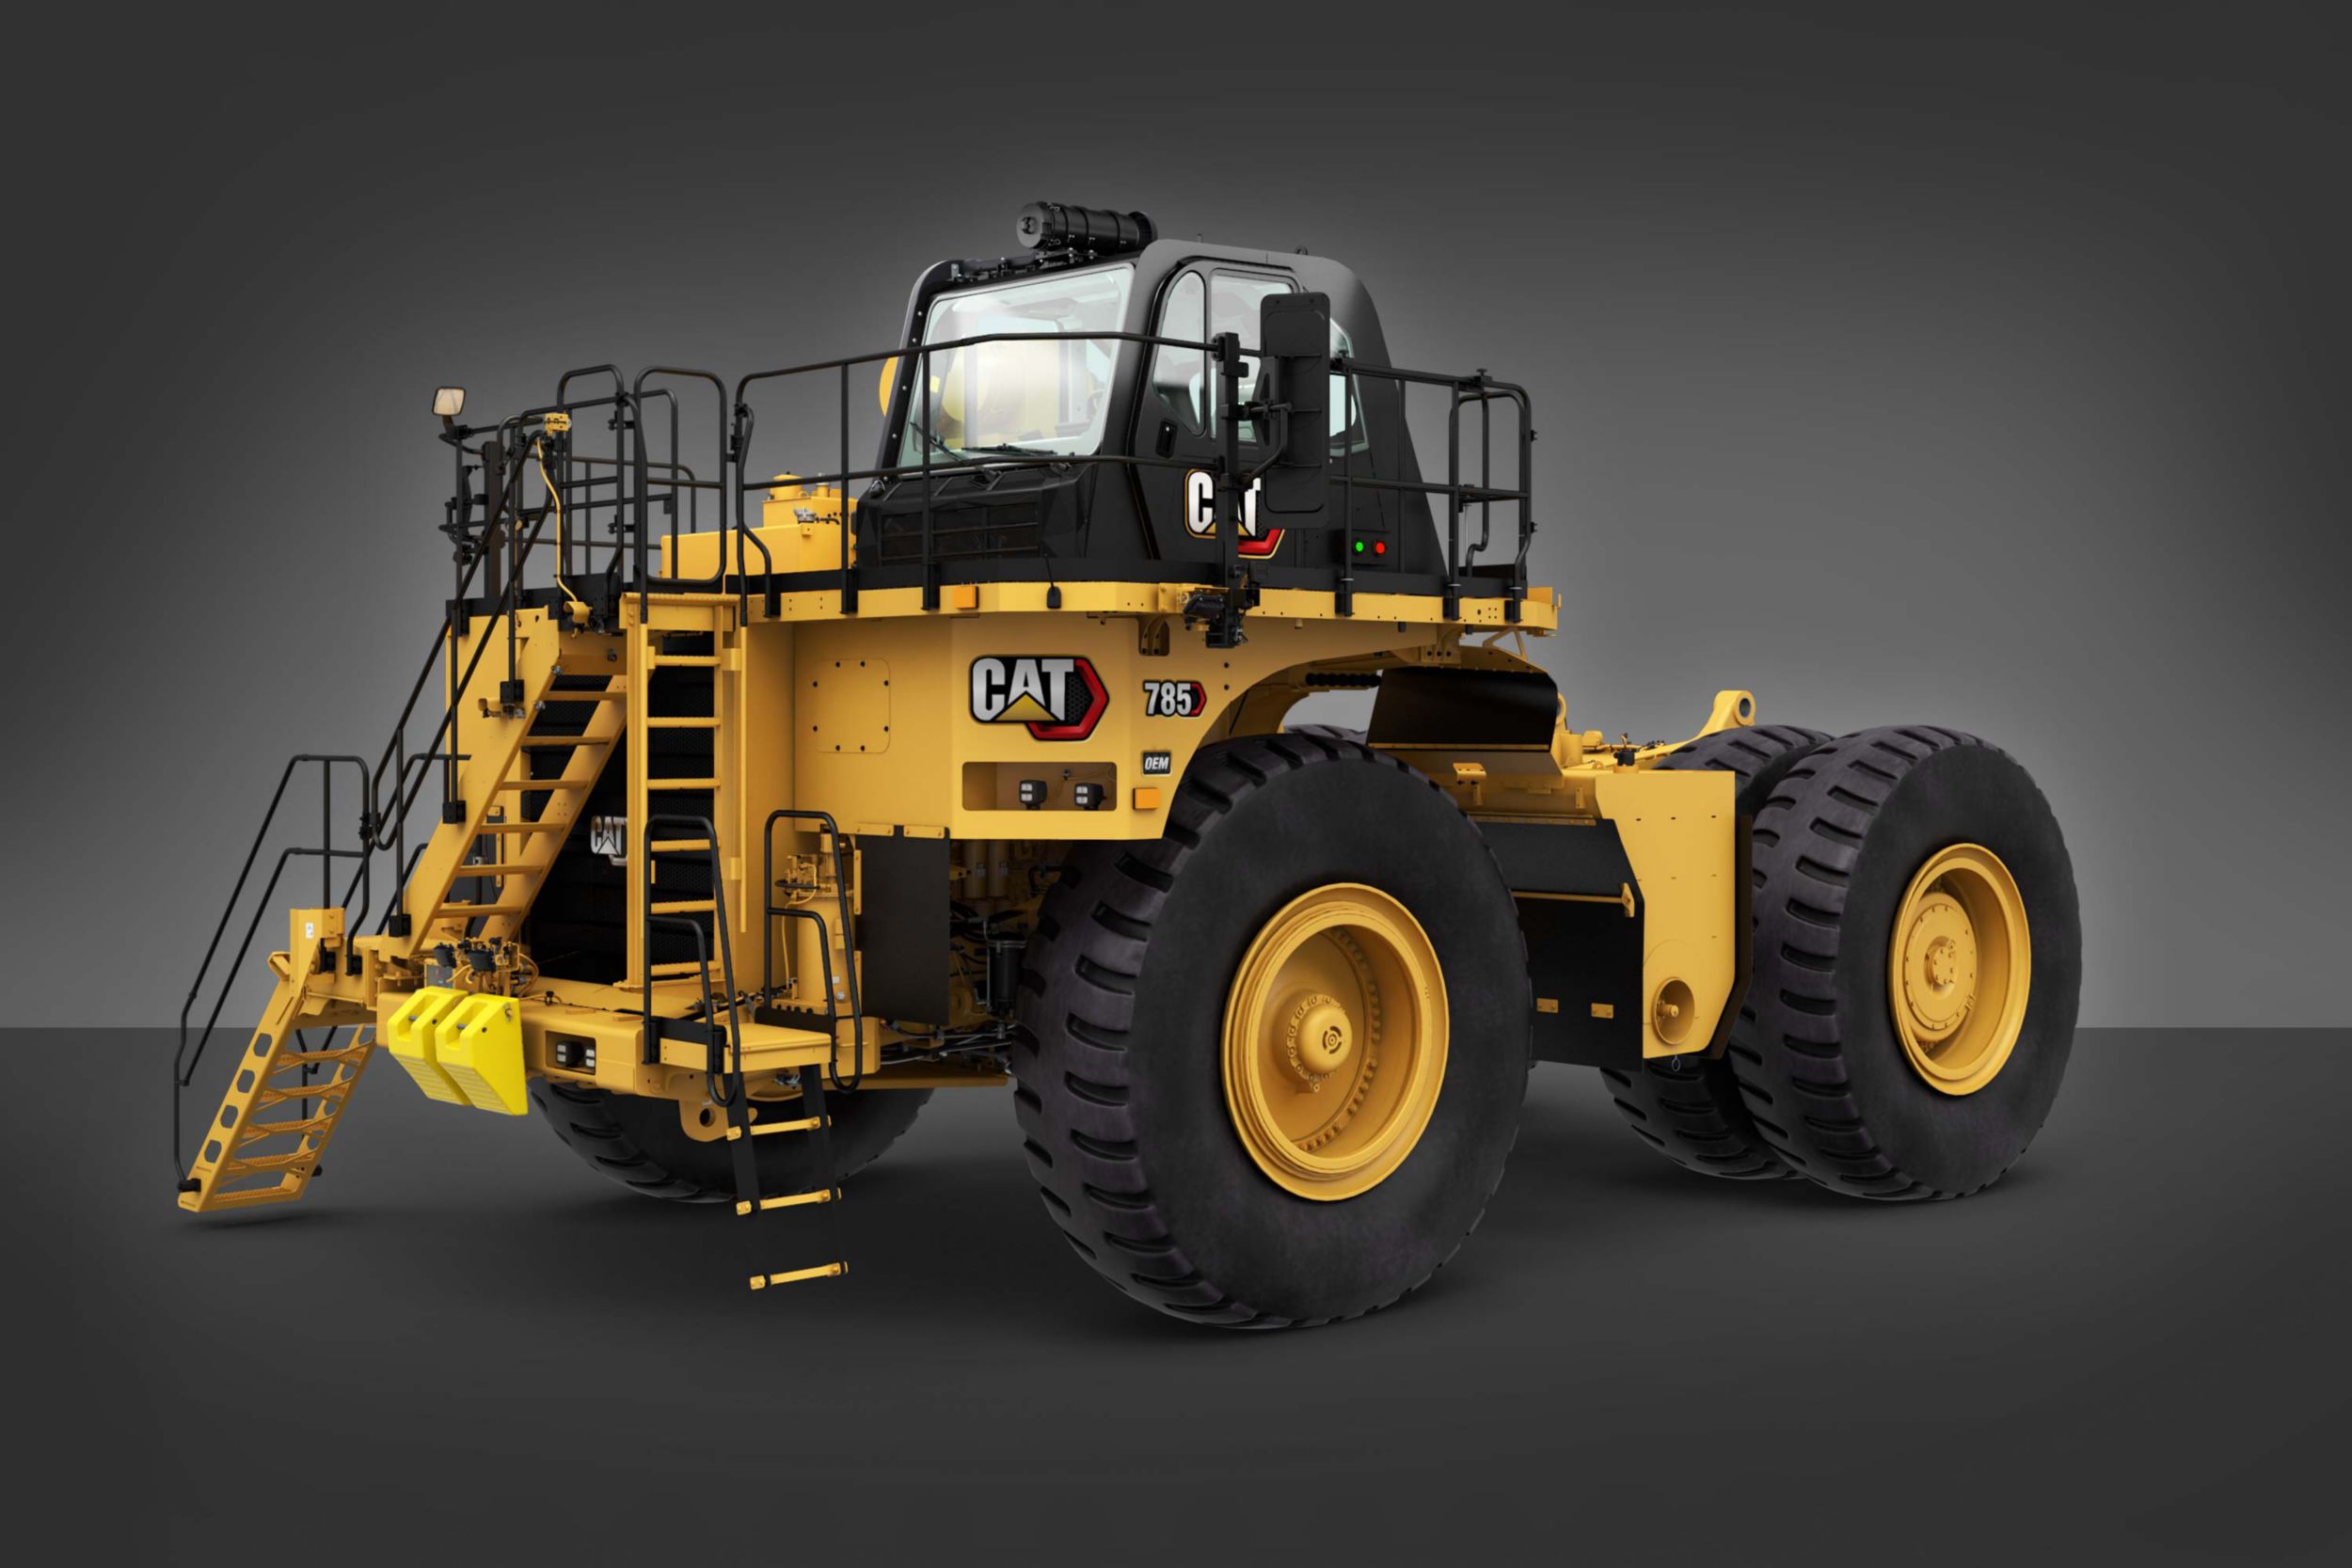 785-chassit är utrustat med de högre ROPS-certifieringsklasserna för traktorer som behövs för specialmaskiner, inklusive vattentruckar, bogsertraktorer och truckar med smörjolja och bränsle.